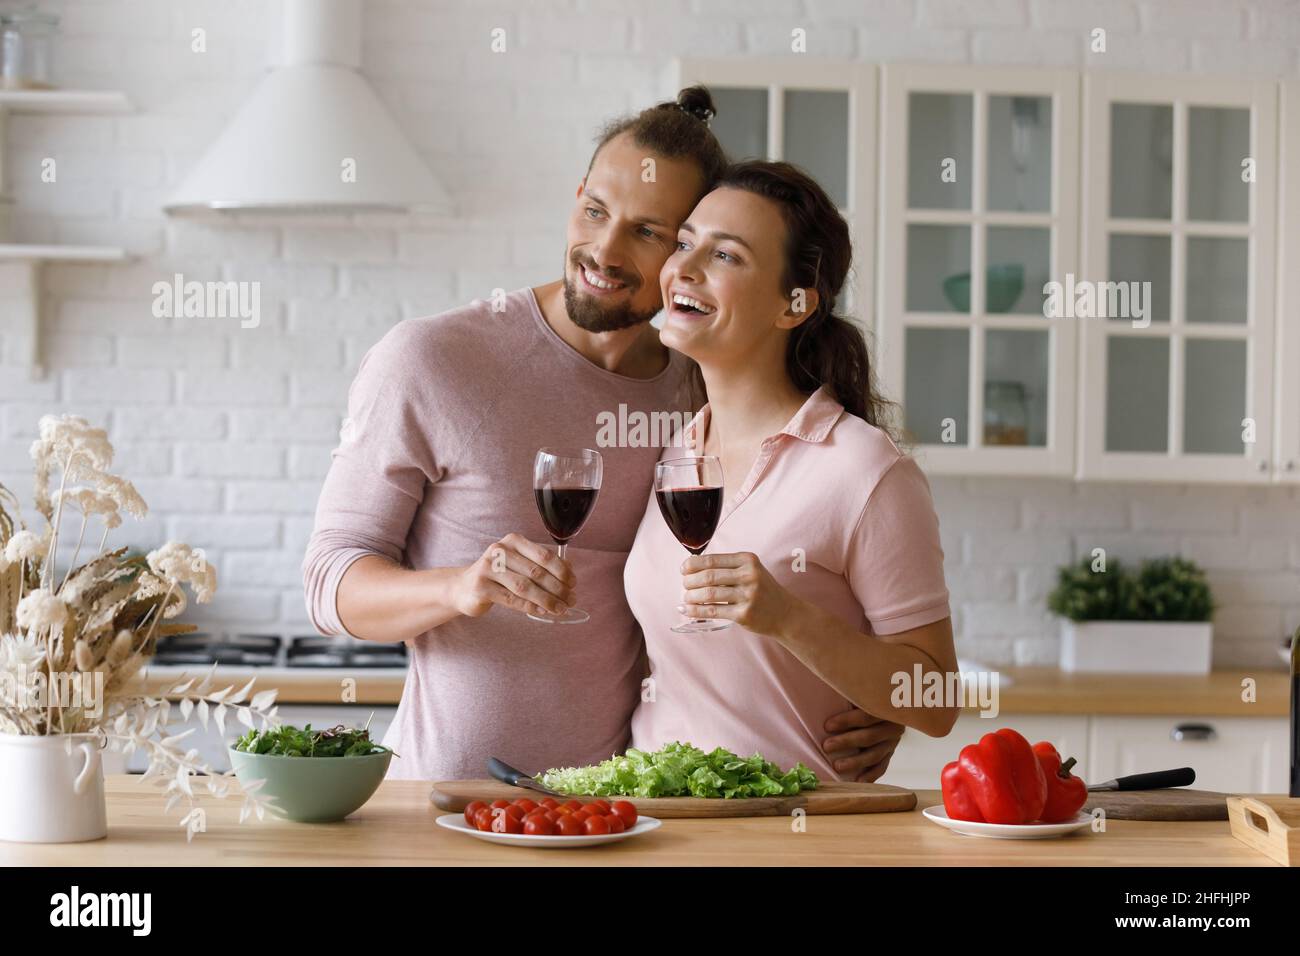 Glücklich Bonding junge Familie Paar träumen in der Küche. Stockfoto